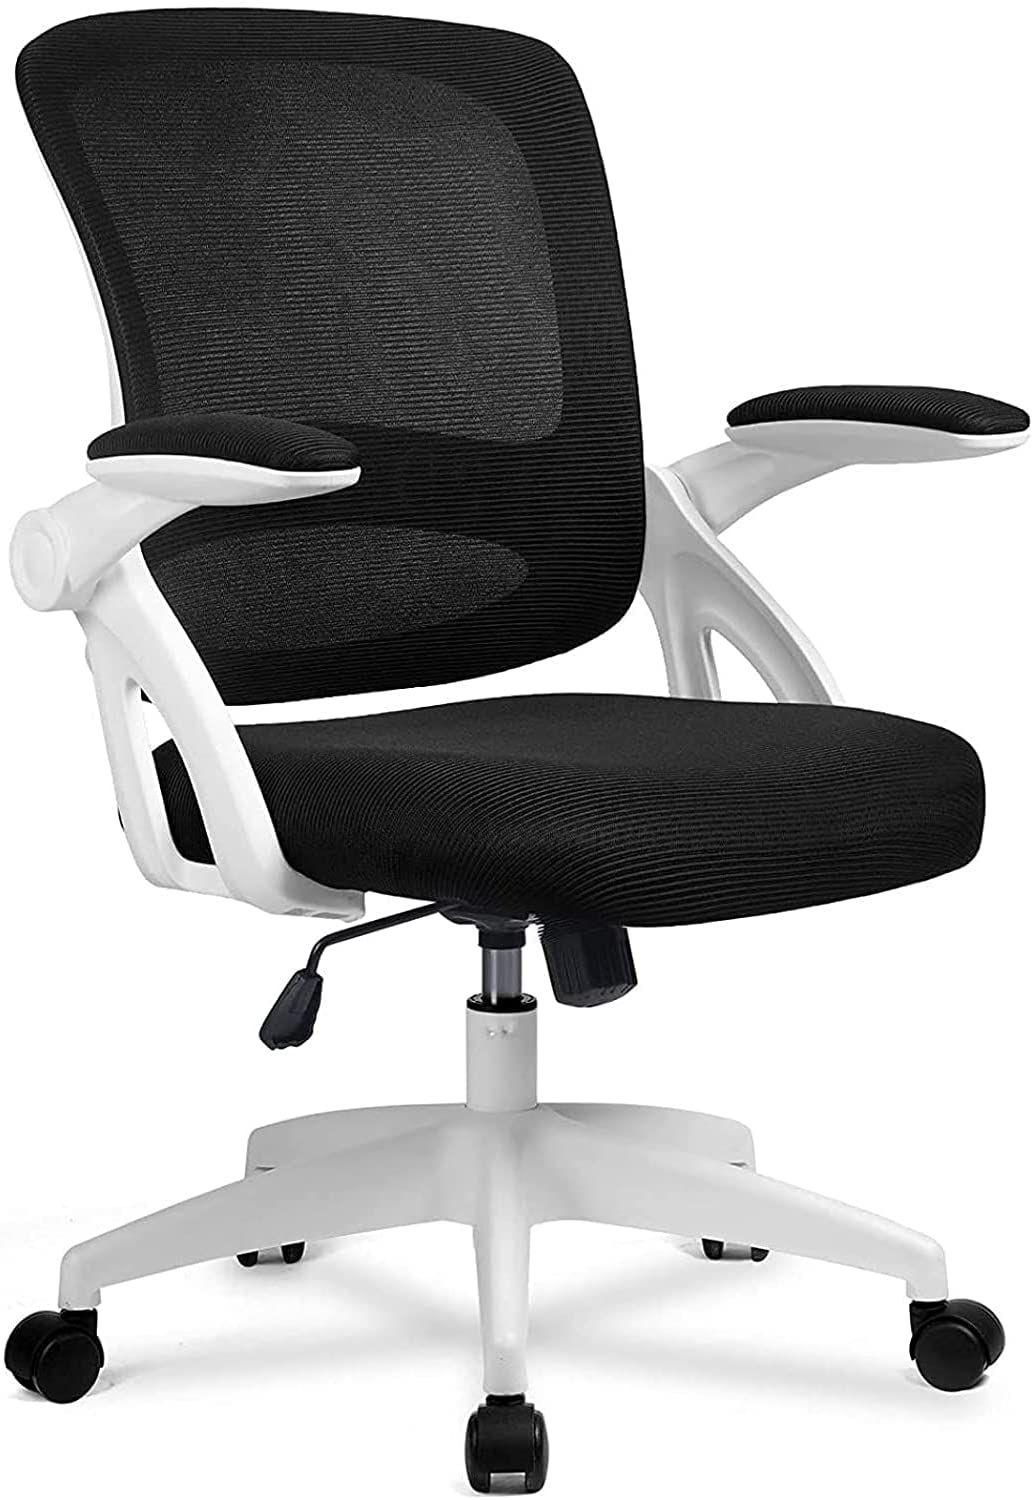 Chaise de bureau blanche ergonomique reglable avec accoudoirs base